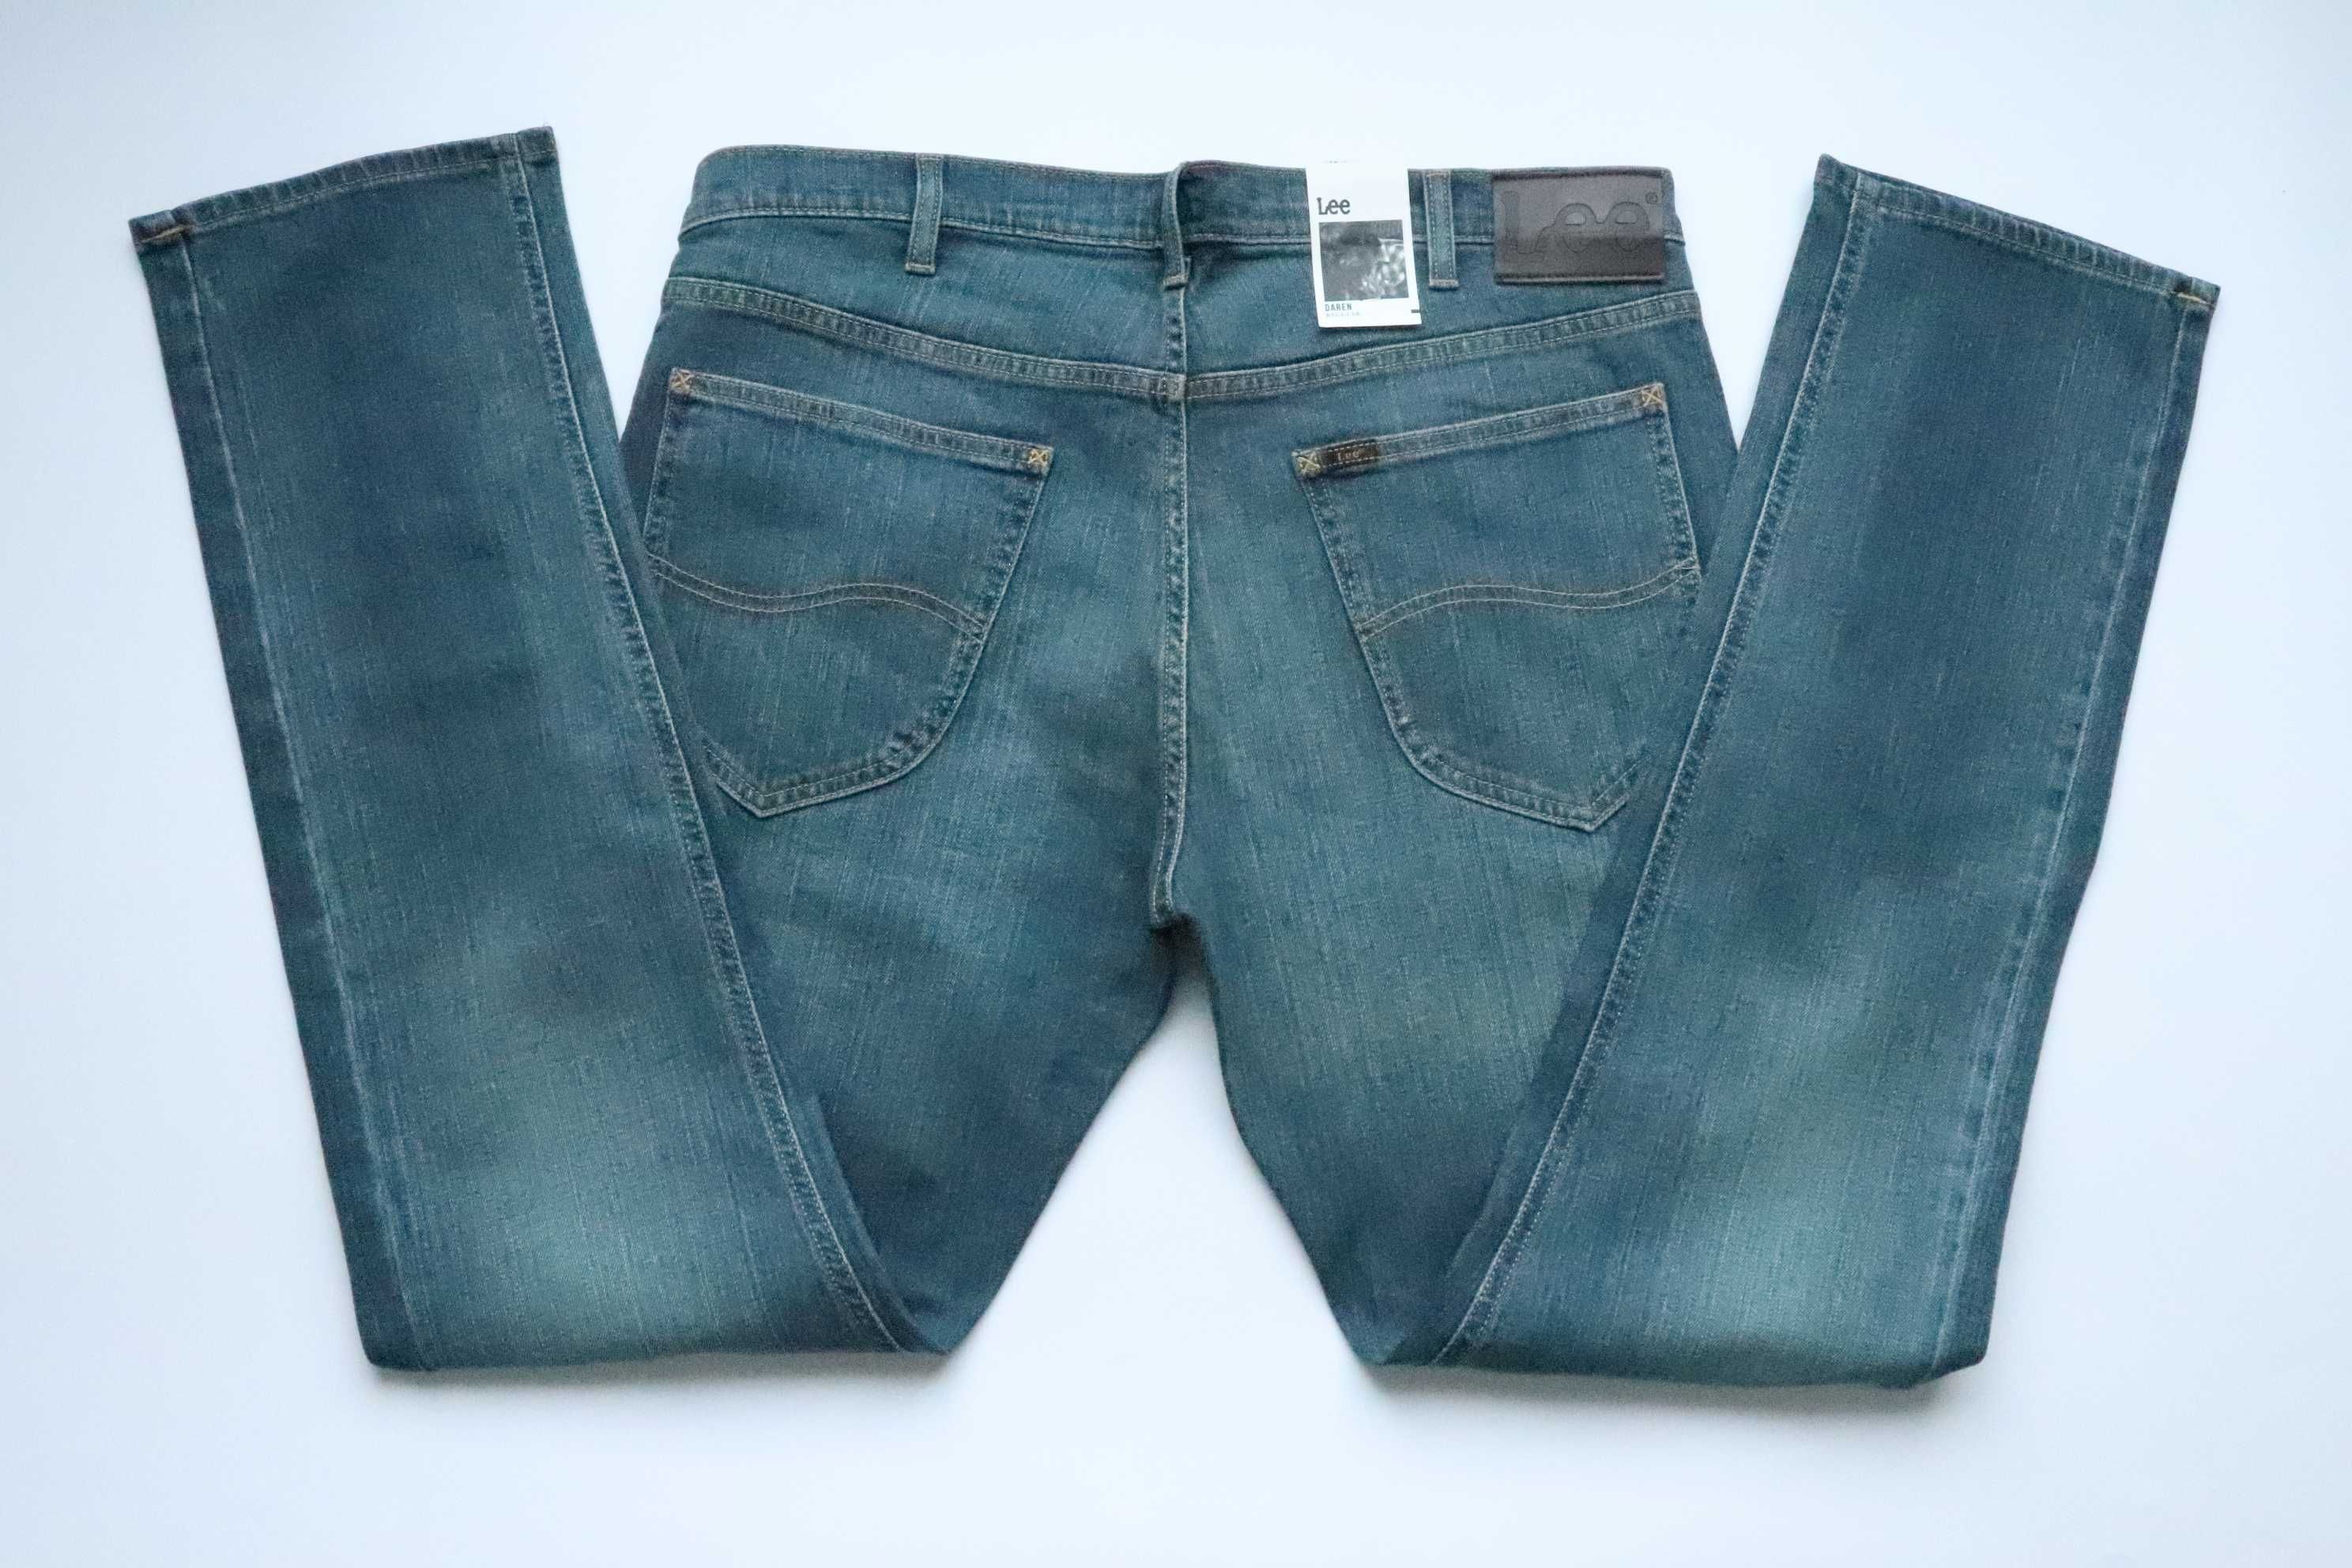 LEE DAREN W38 L34 męskie spodnie jeansy regular fit nowe